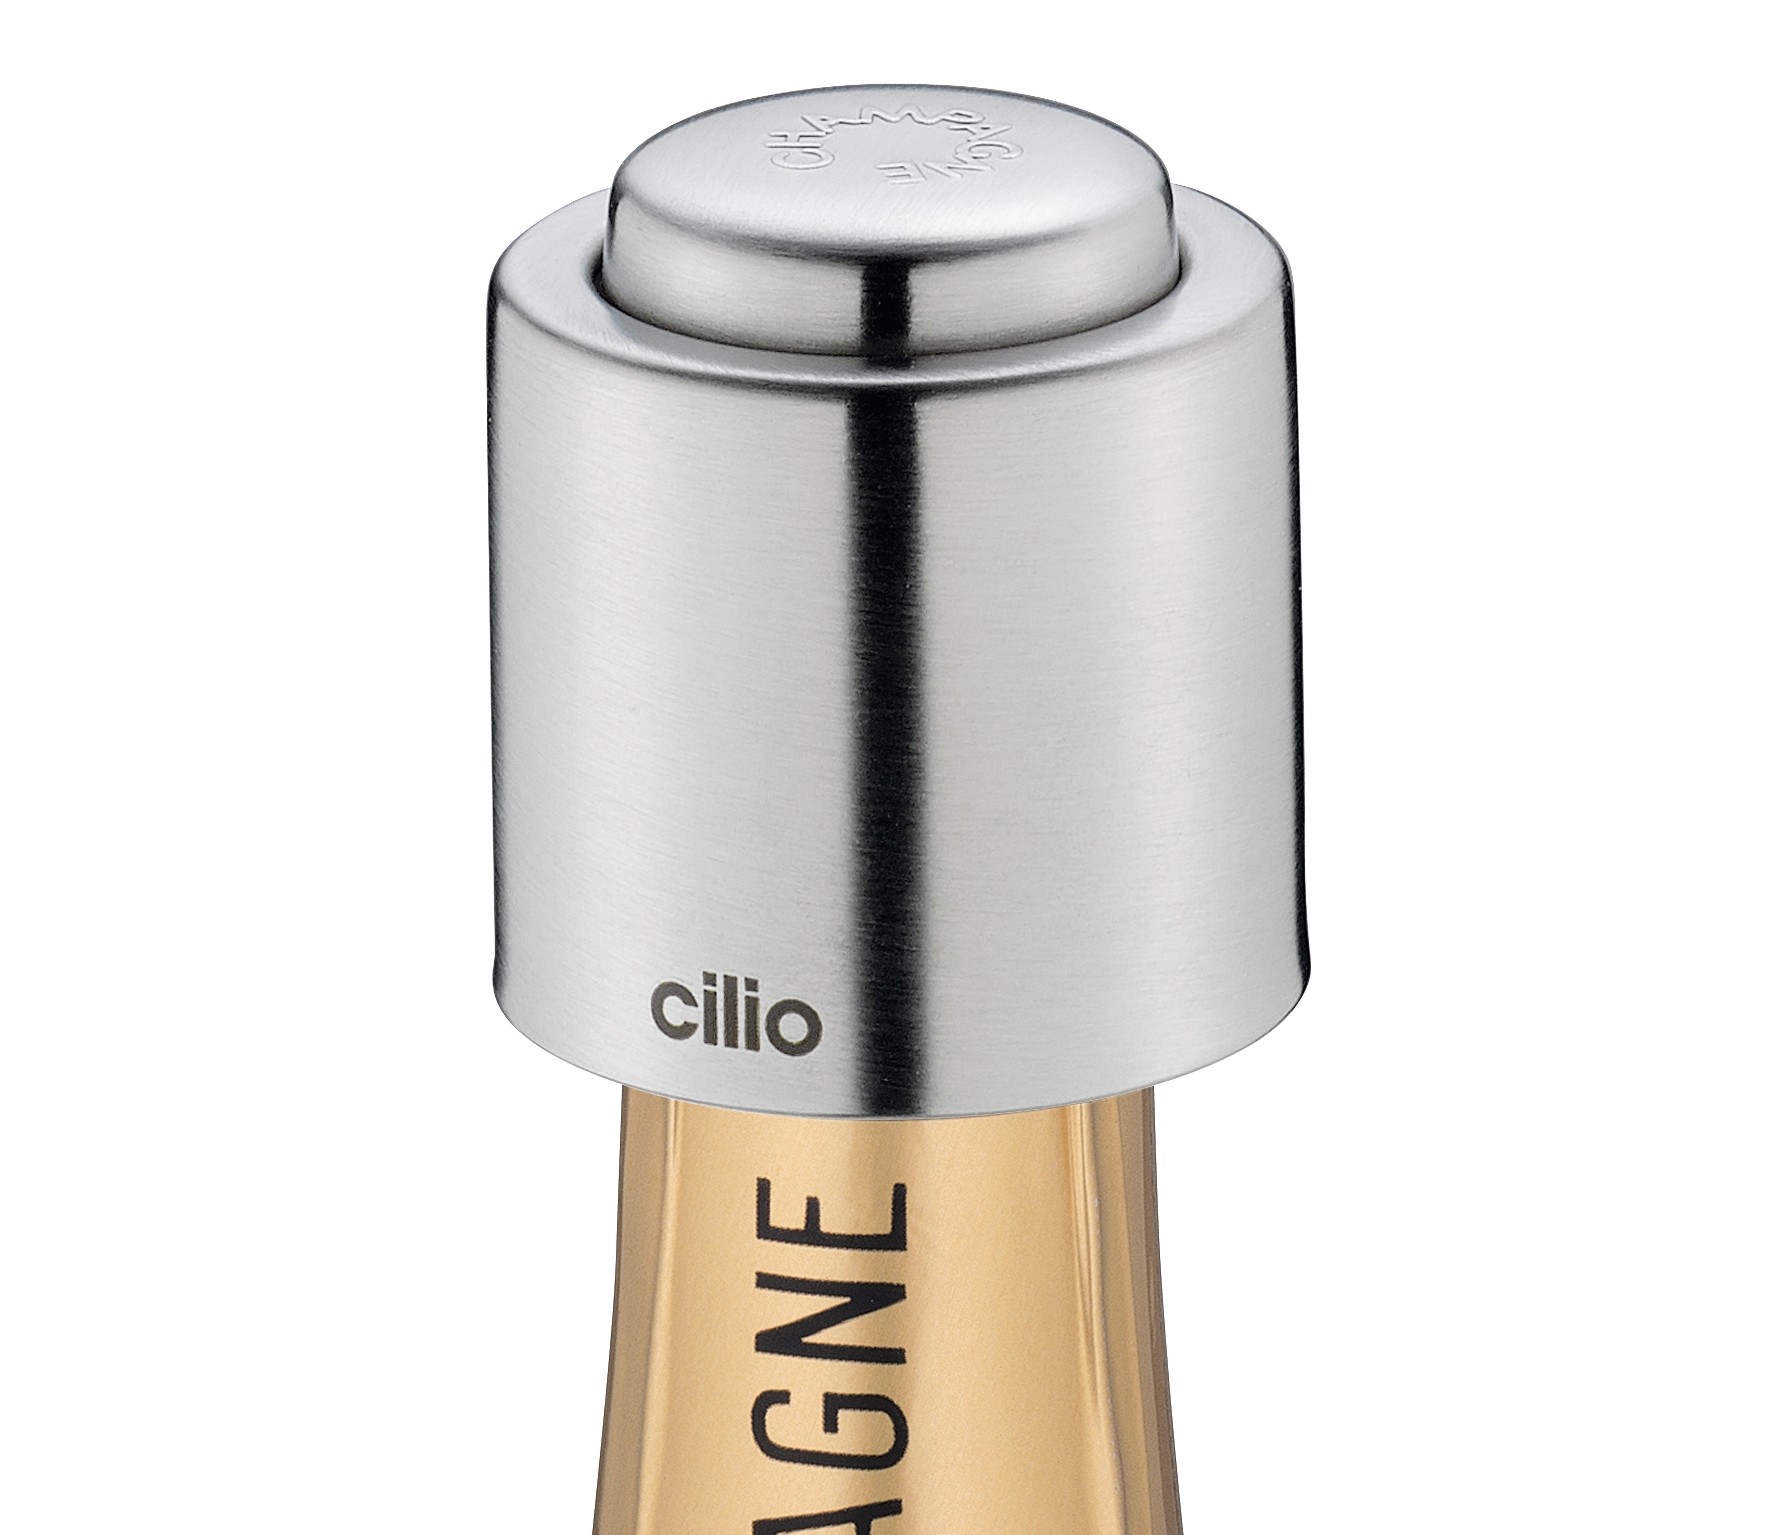 Cilio Champagnerverschluss